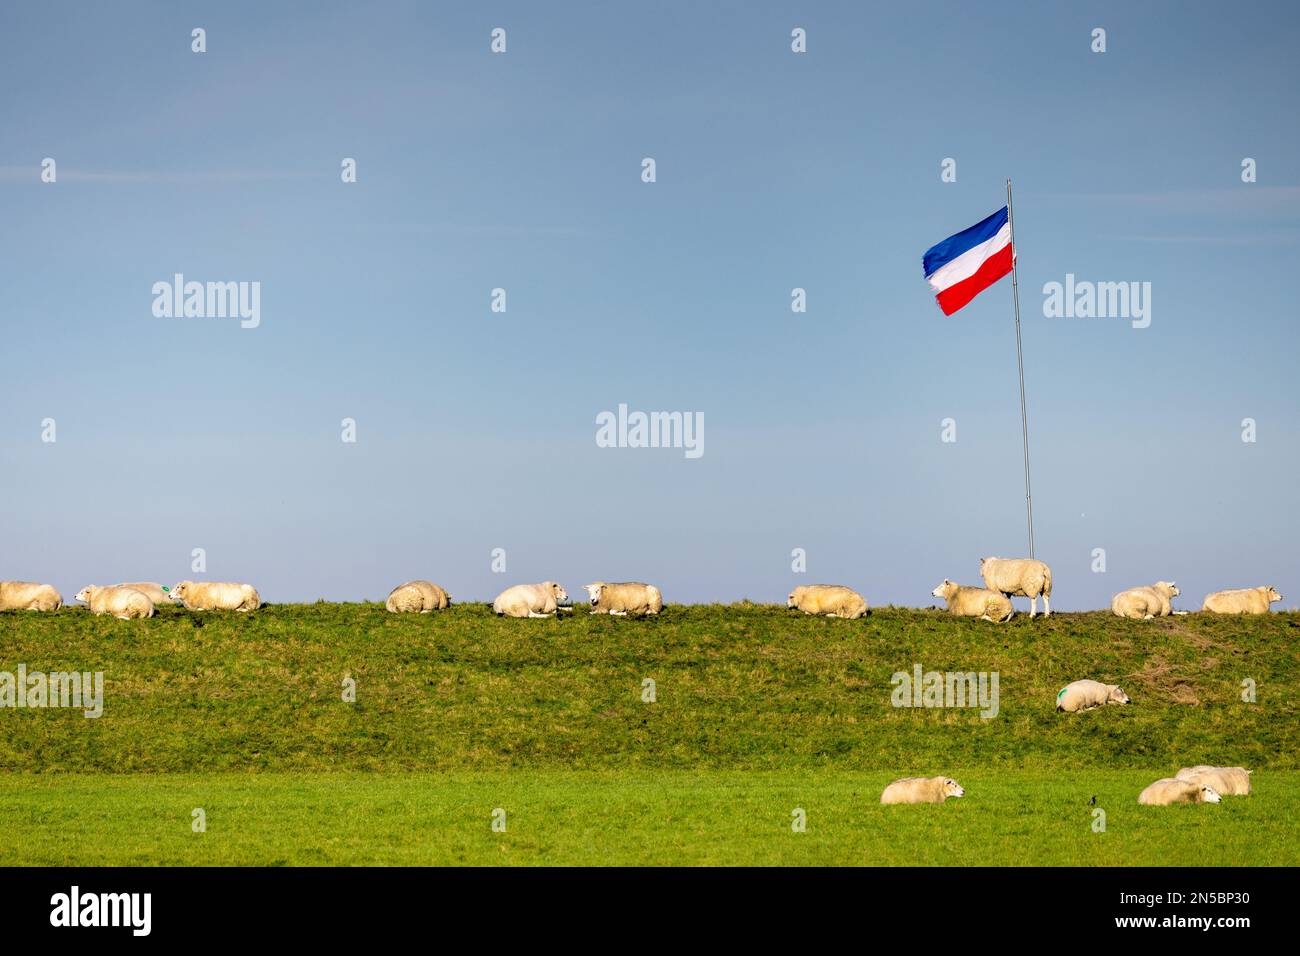 Landwirte protestieren gegen die EU-Agrarpolitik, die Flagge hängt verkehrt herum, Niederlande, Frisia, NSG Buitendijks, Ferwert Stockfoto